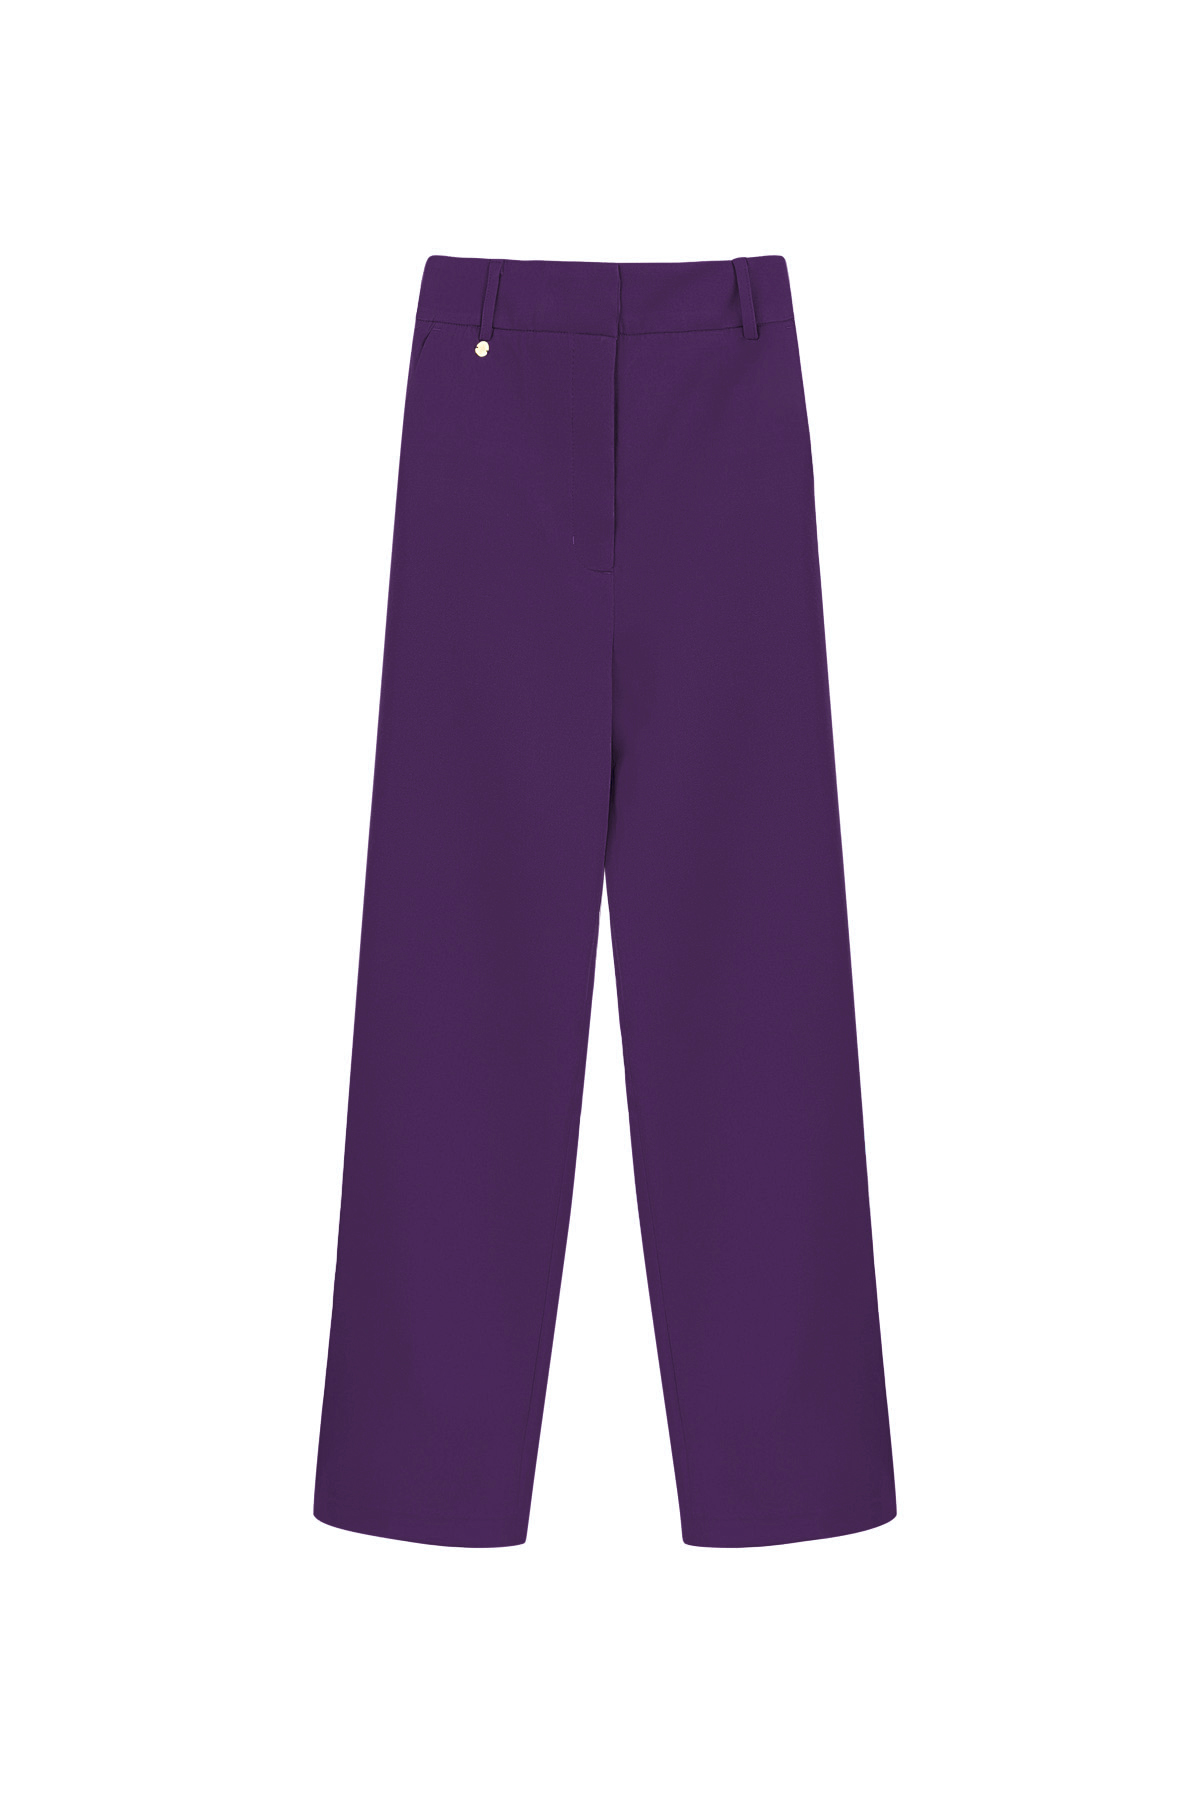 Pantalón plisado - violeta h5 